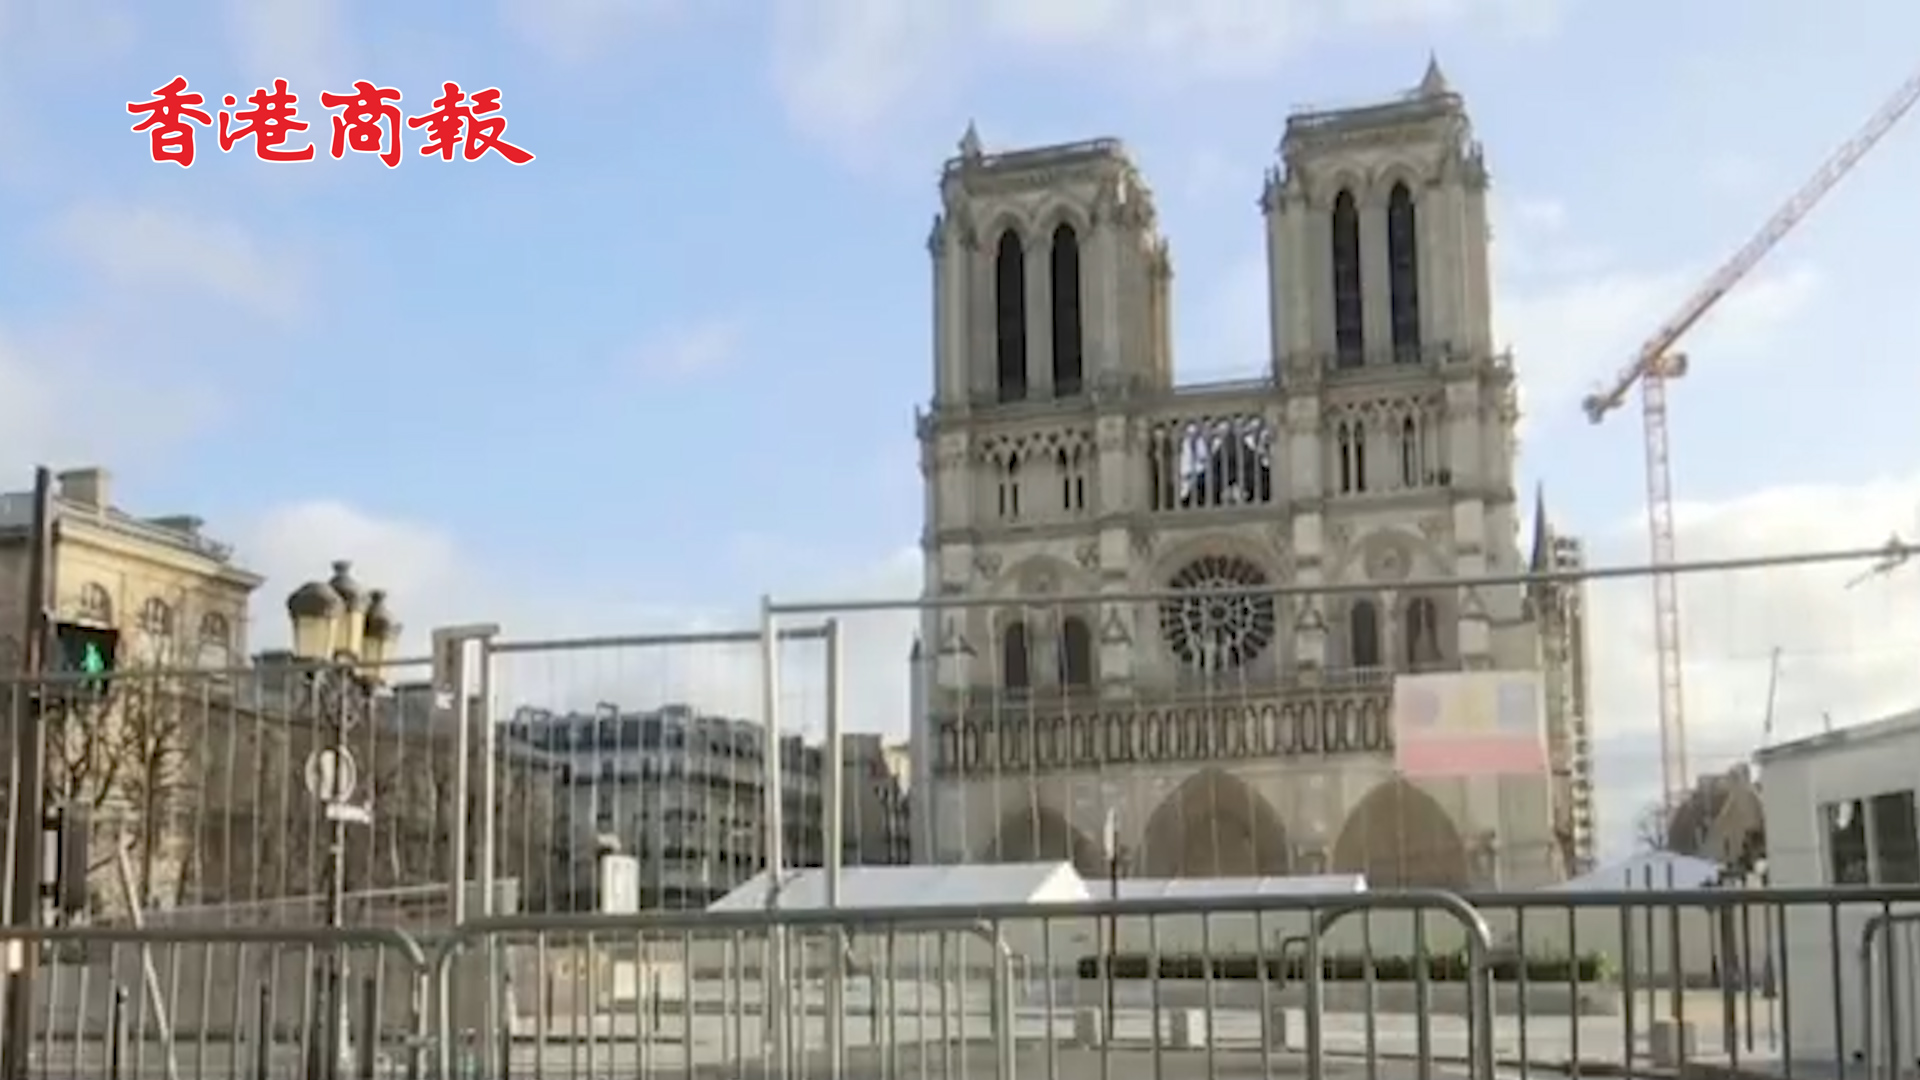 有片丨巴黎聖母院前廣場因鉛污染被暫時關閉